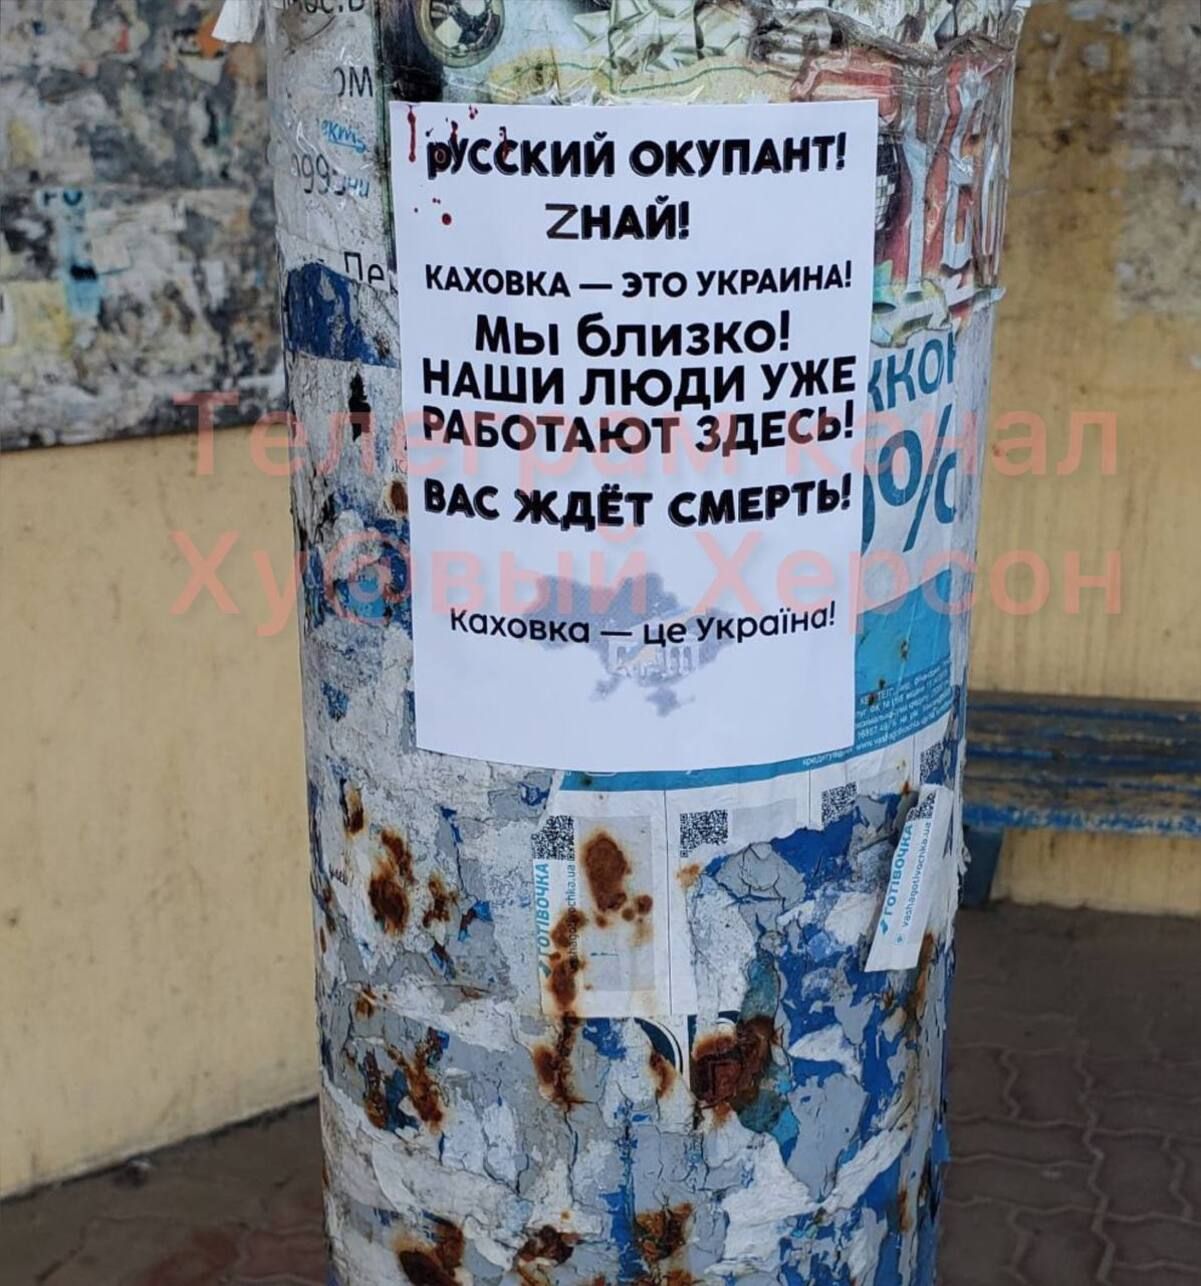 "Потому что Каховка – это Украина": партизаны оставили оккупантам послание